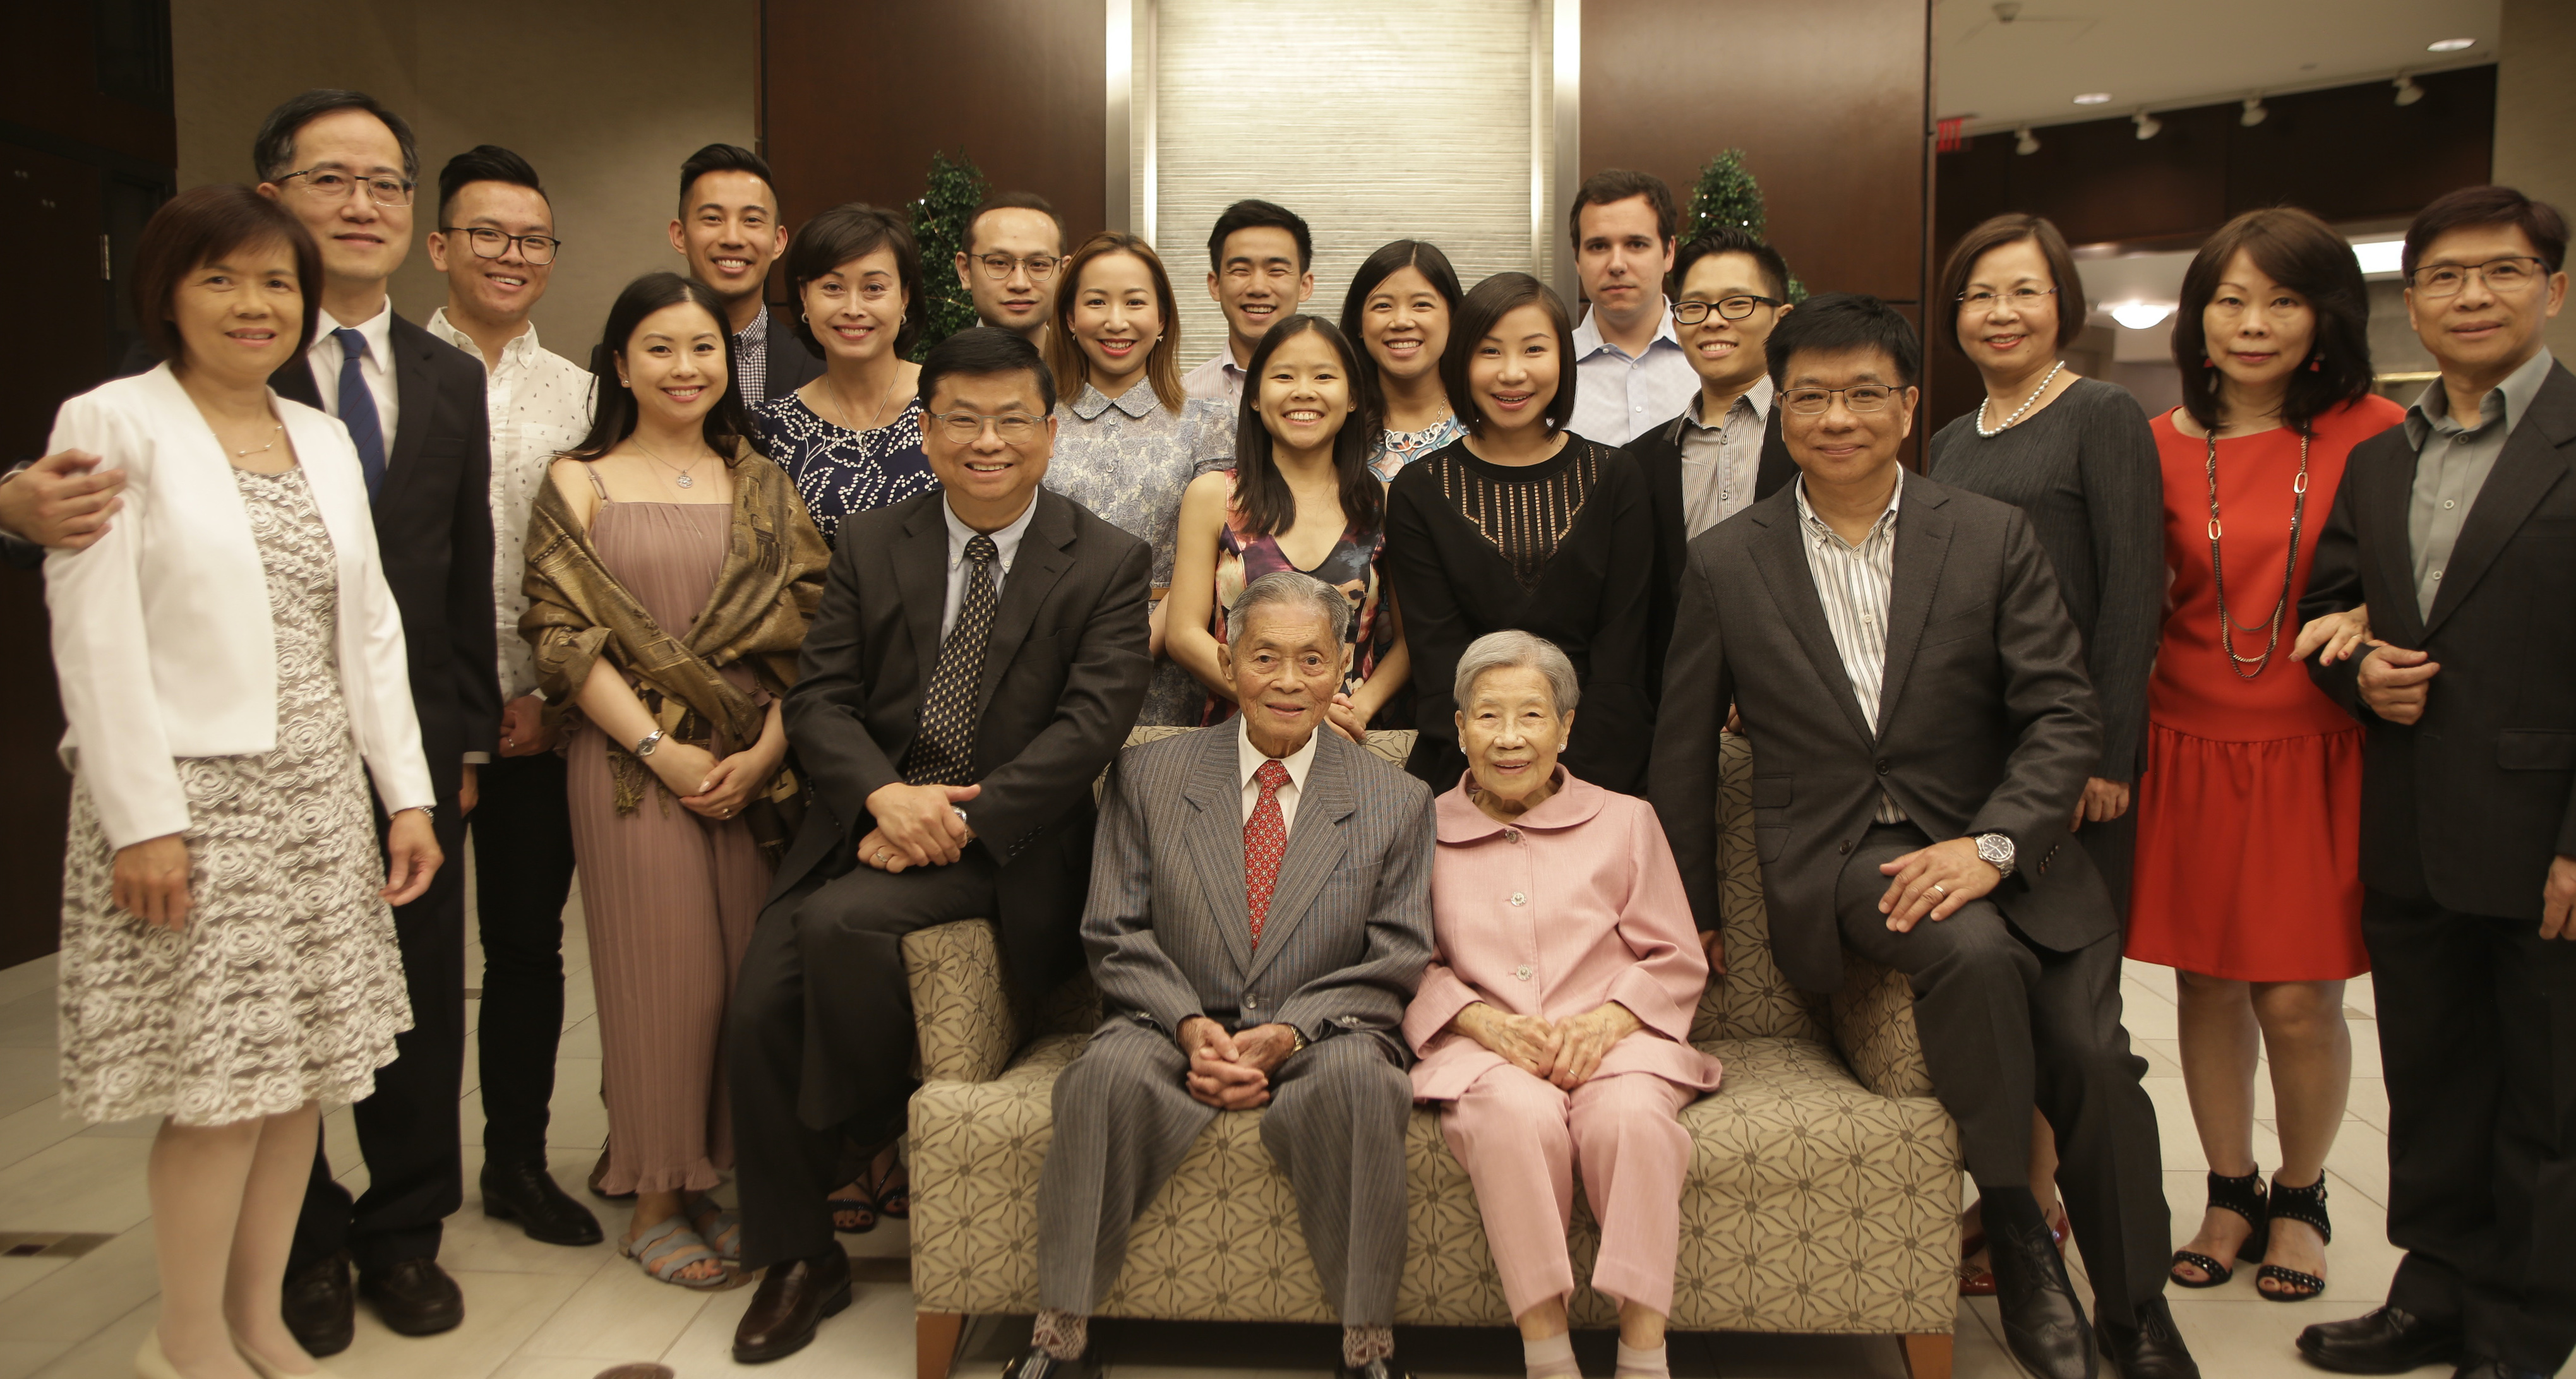 65th Wedding Anniversary, 2018 (Photo: Rev. Francis C. Choi)